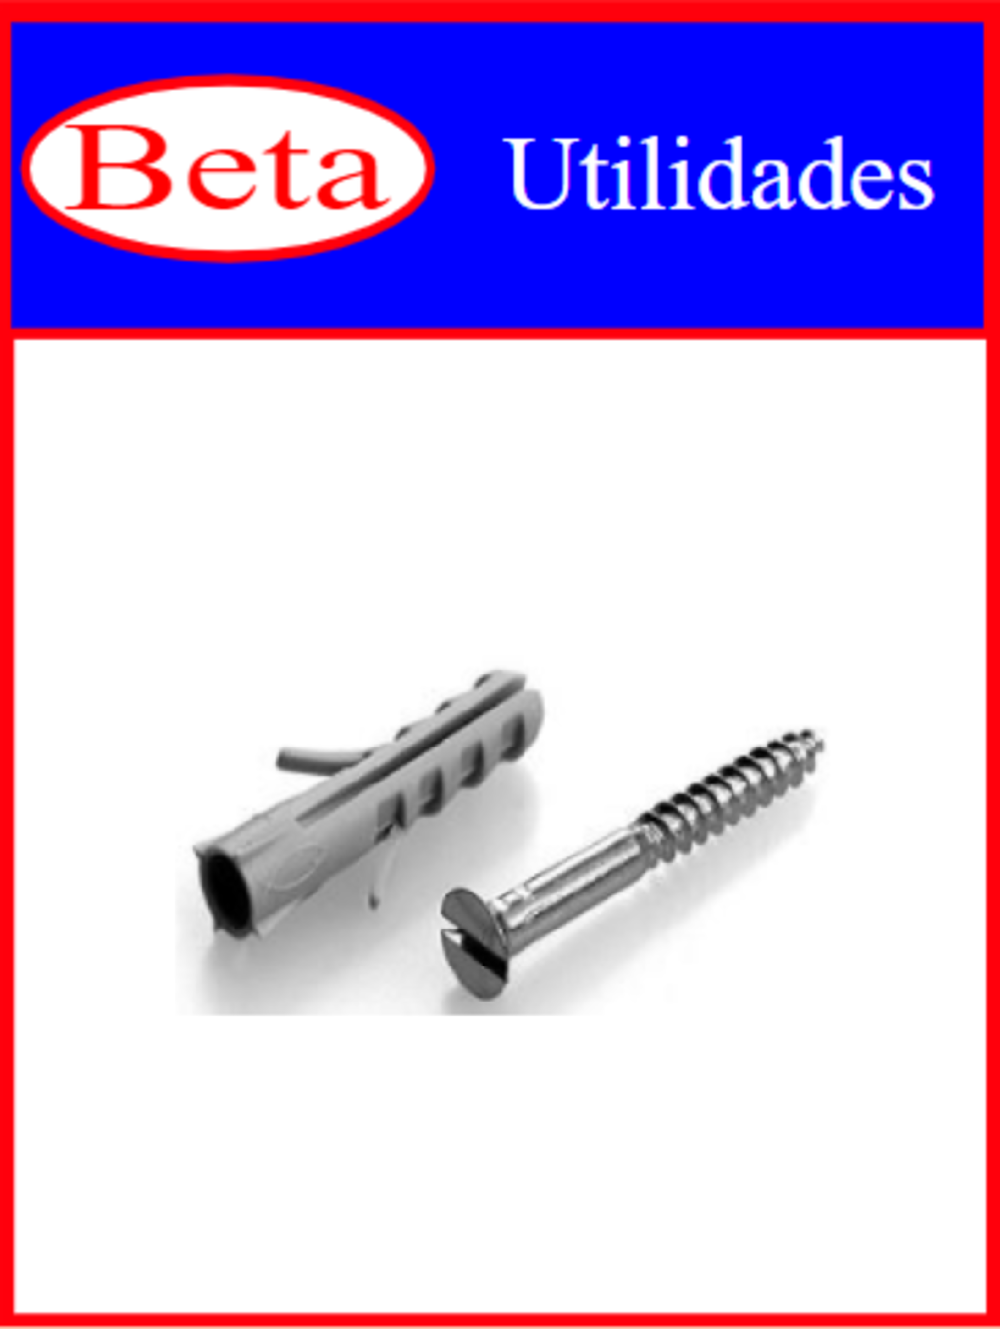 7898021401233 - BETA UTILIDADES PARAFU C/ BUCHA 10 C/4